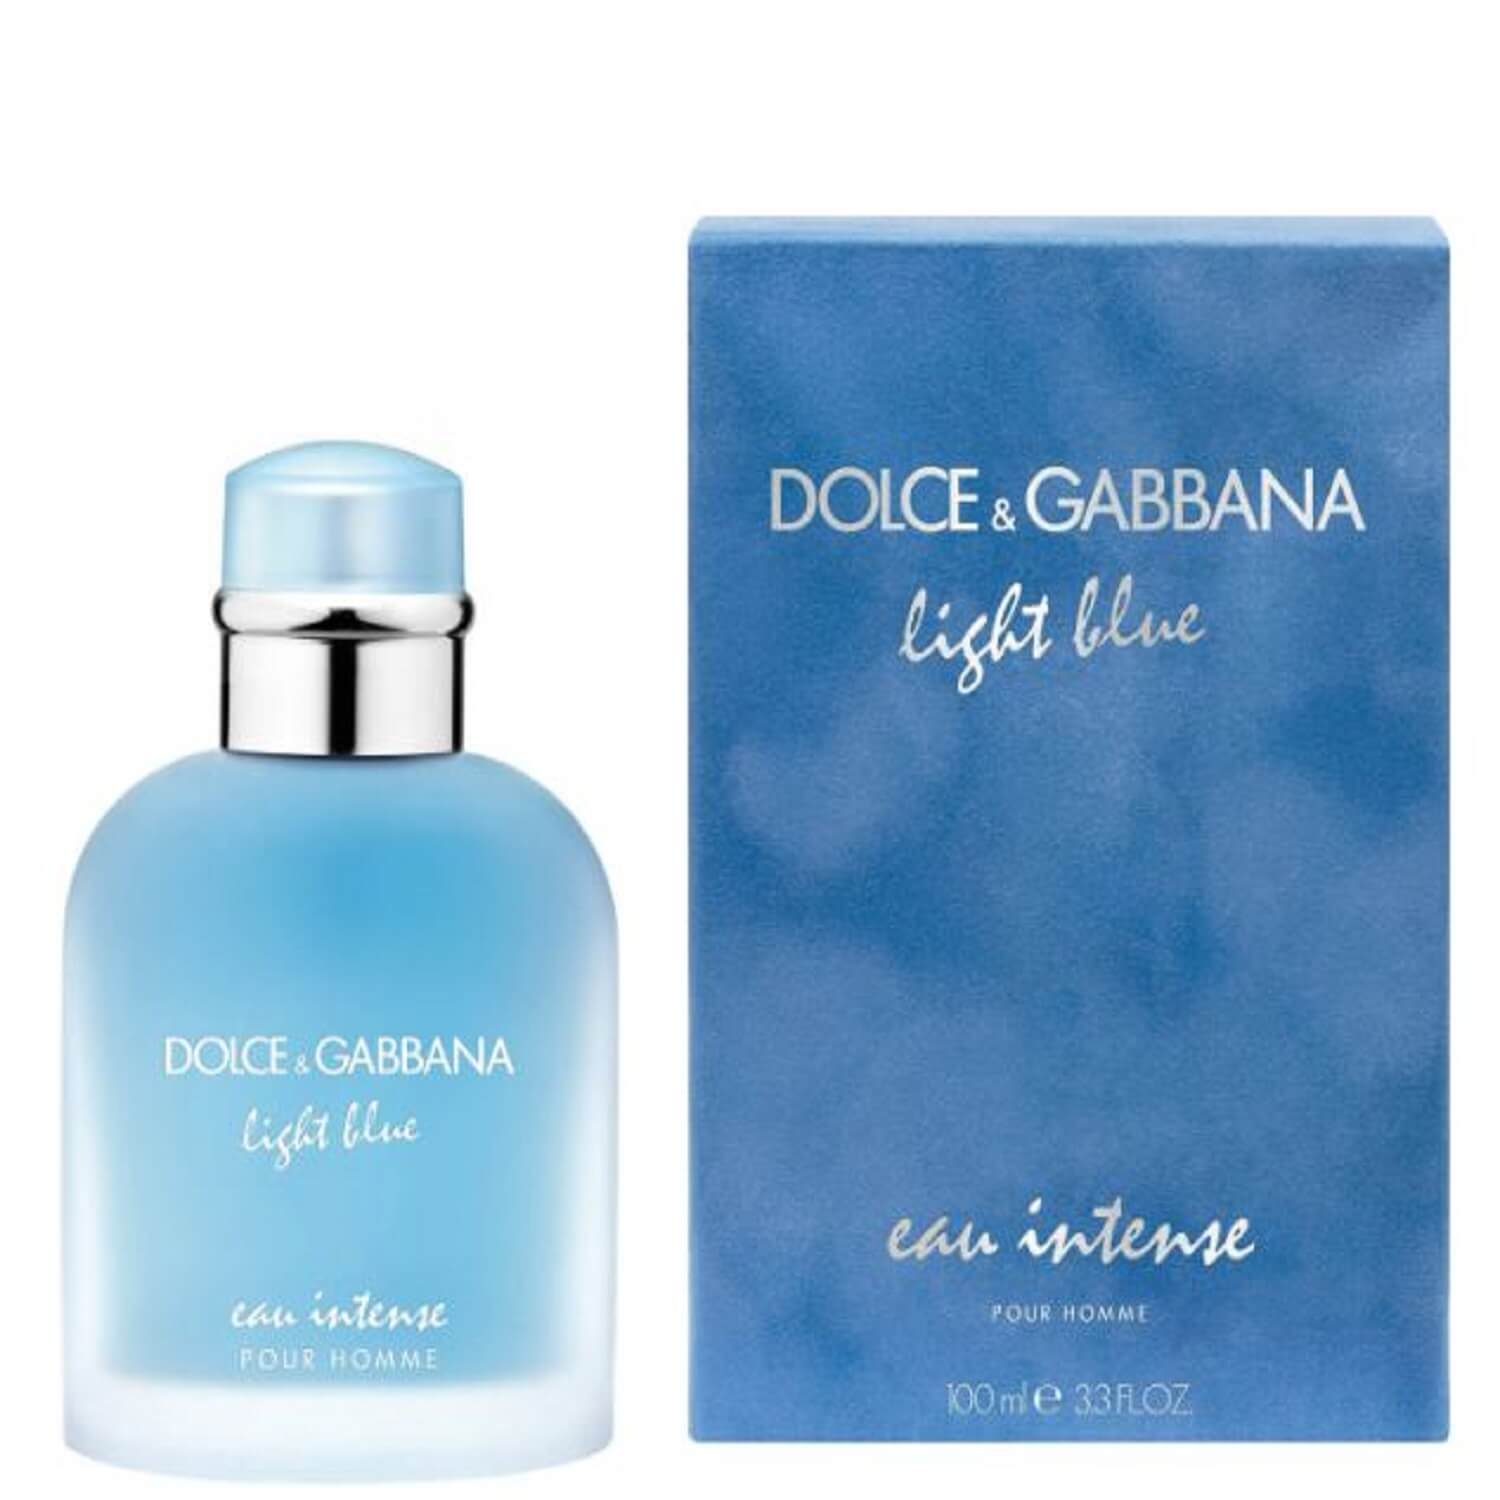 DOLCE & GABBANA LIGHT BLUE EAU INTENSE POUR HOMME EAU DE PARFUM